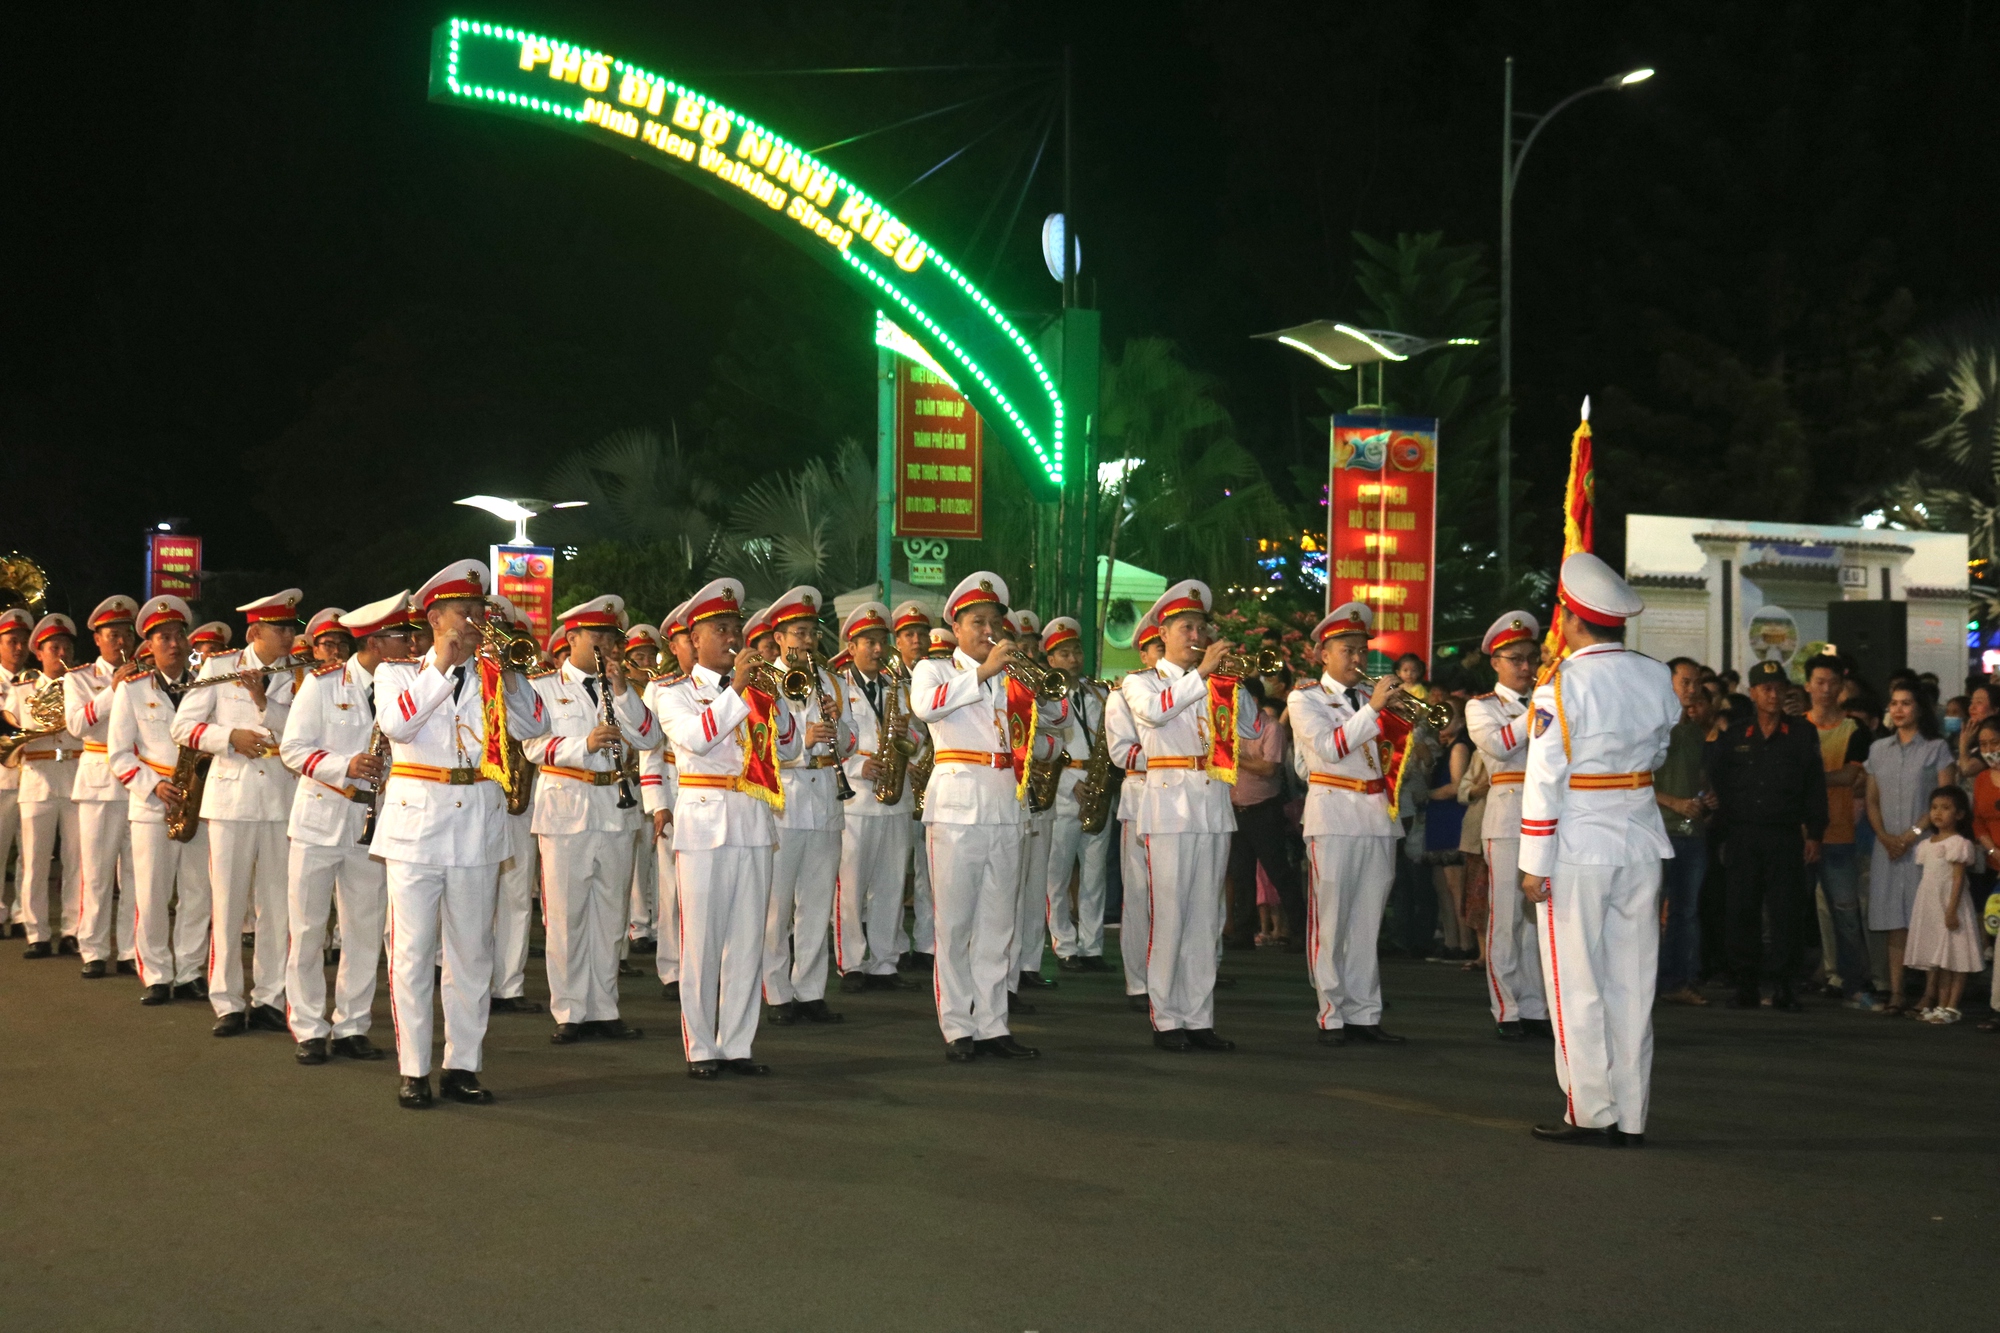 CLIP: Đoàn nghi lễ Công an nhân dân biểu diễn tại bến Ninh Kiều - Ảnh 2.